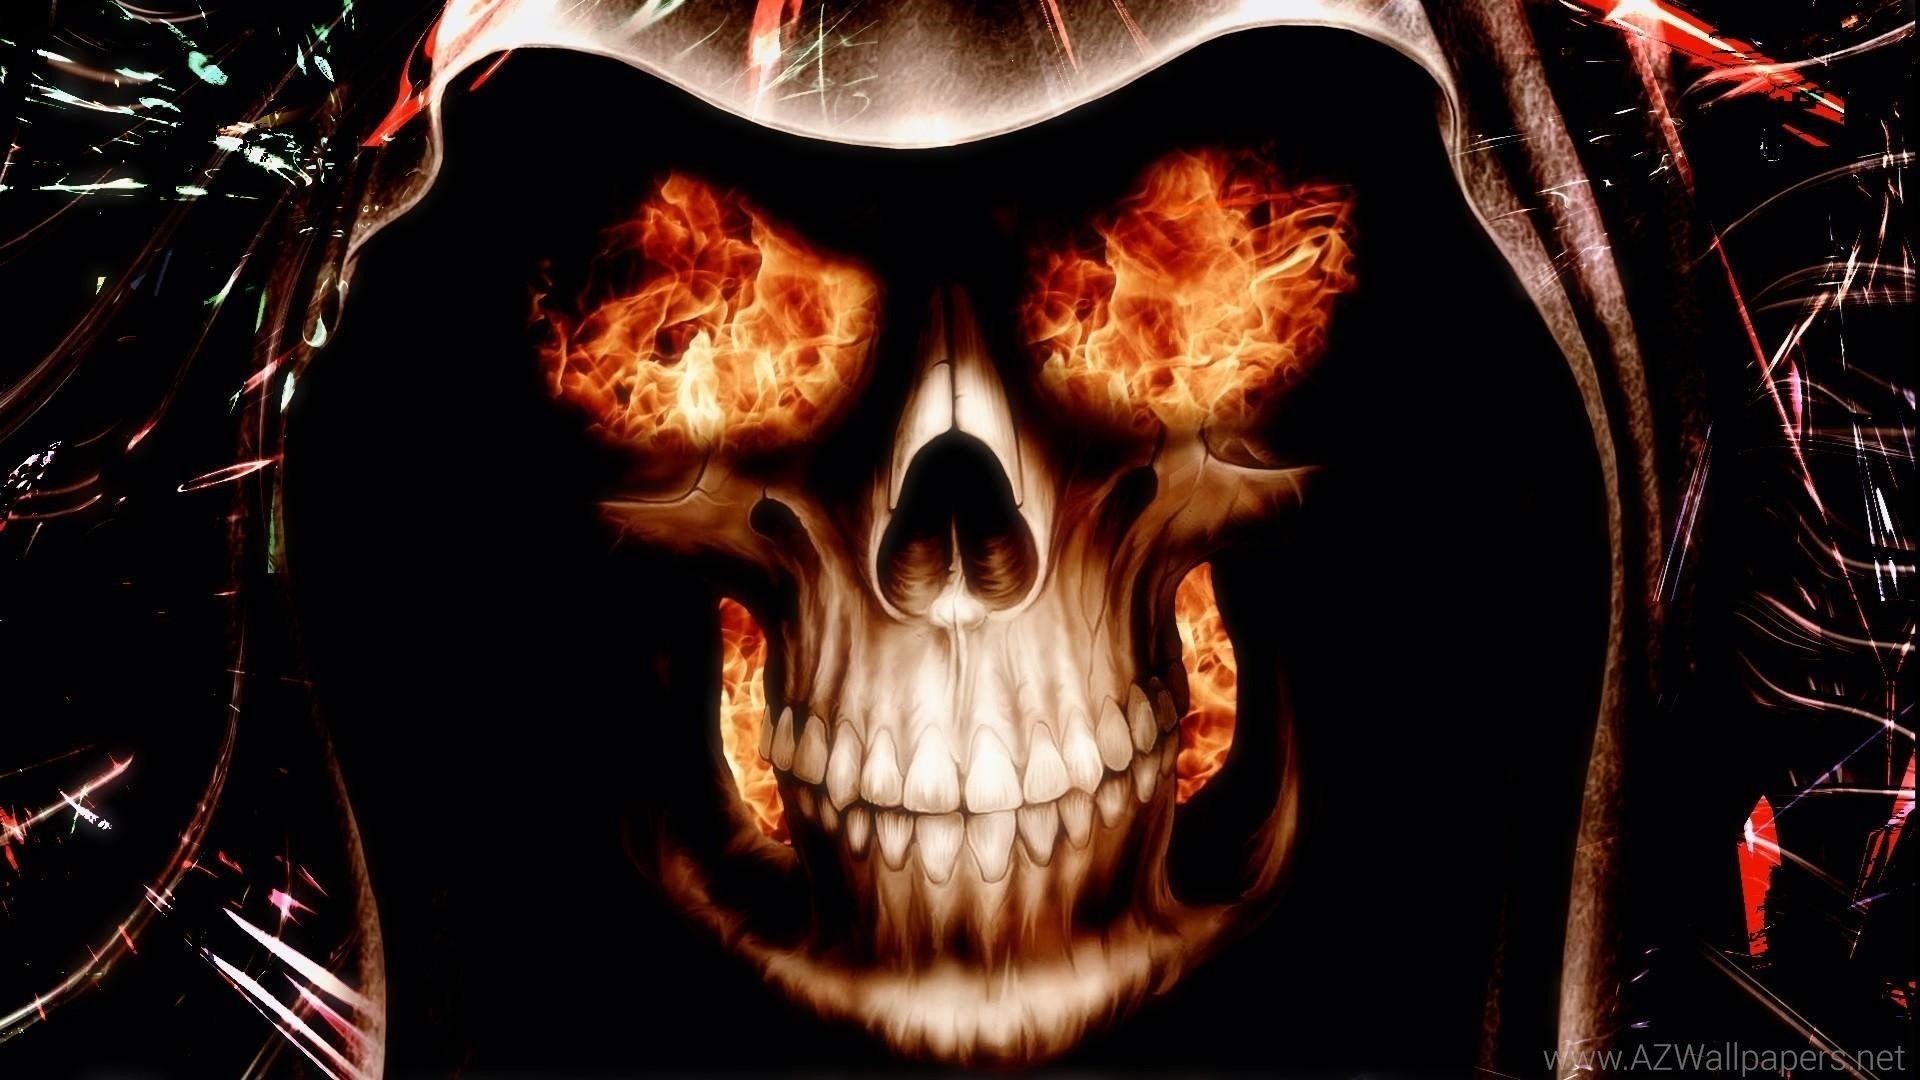 Skull wallpapers hd-fire-skull-wallpapers